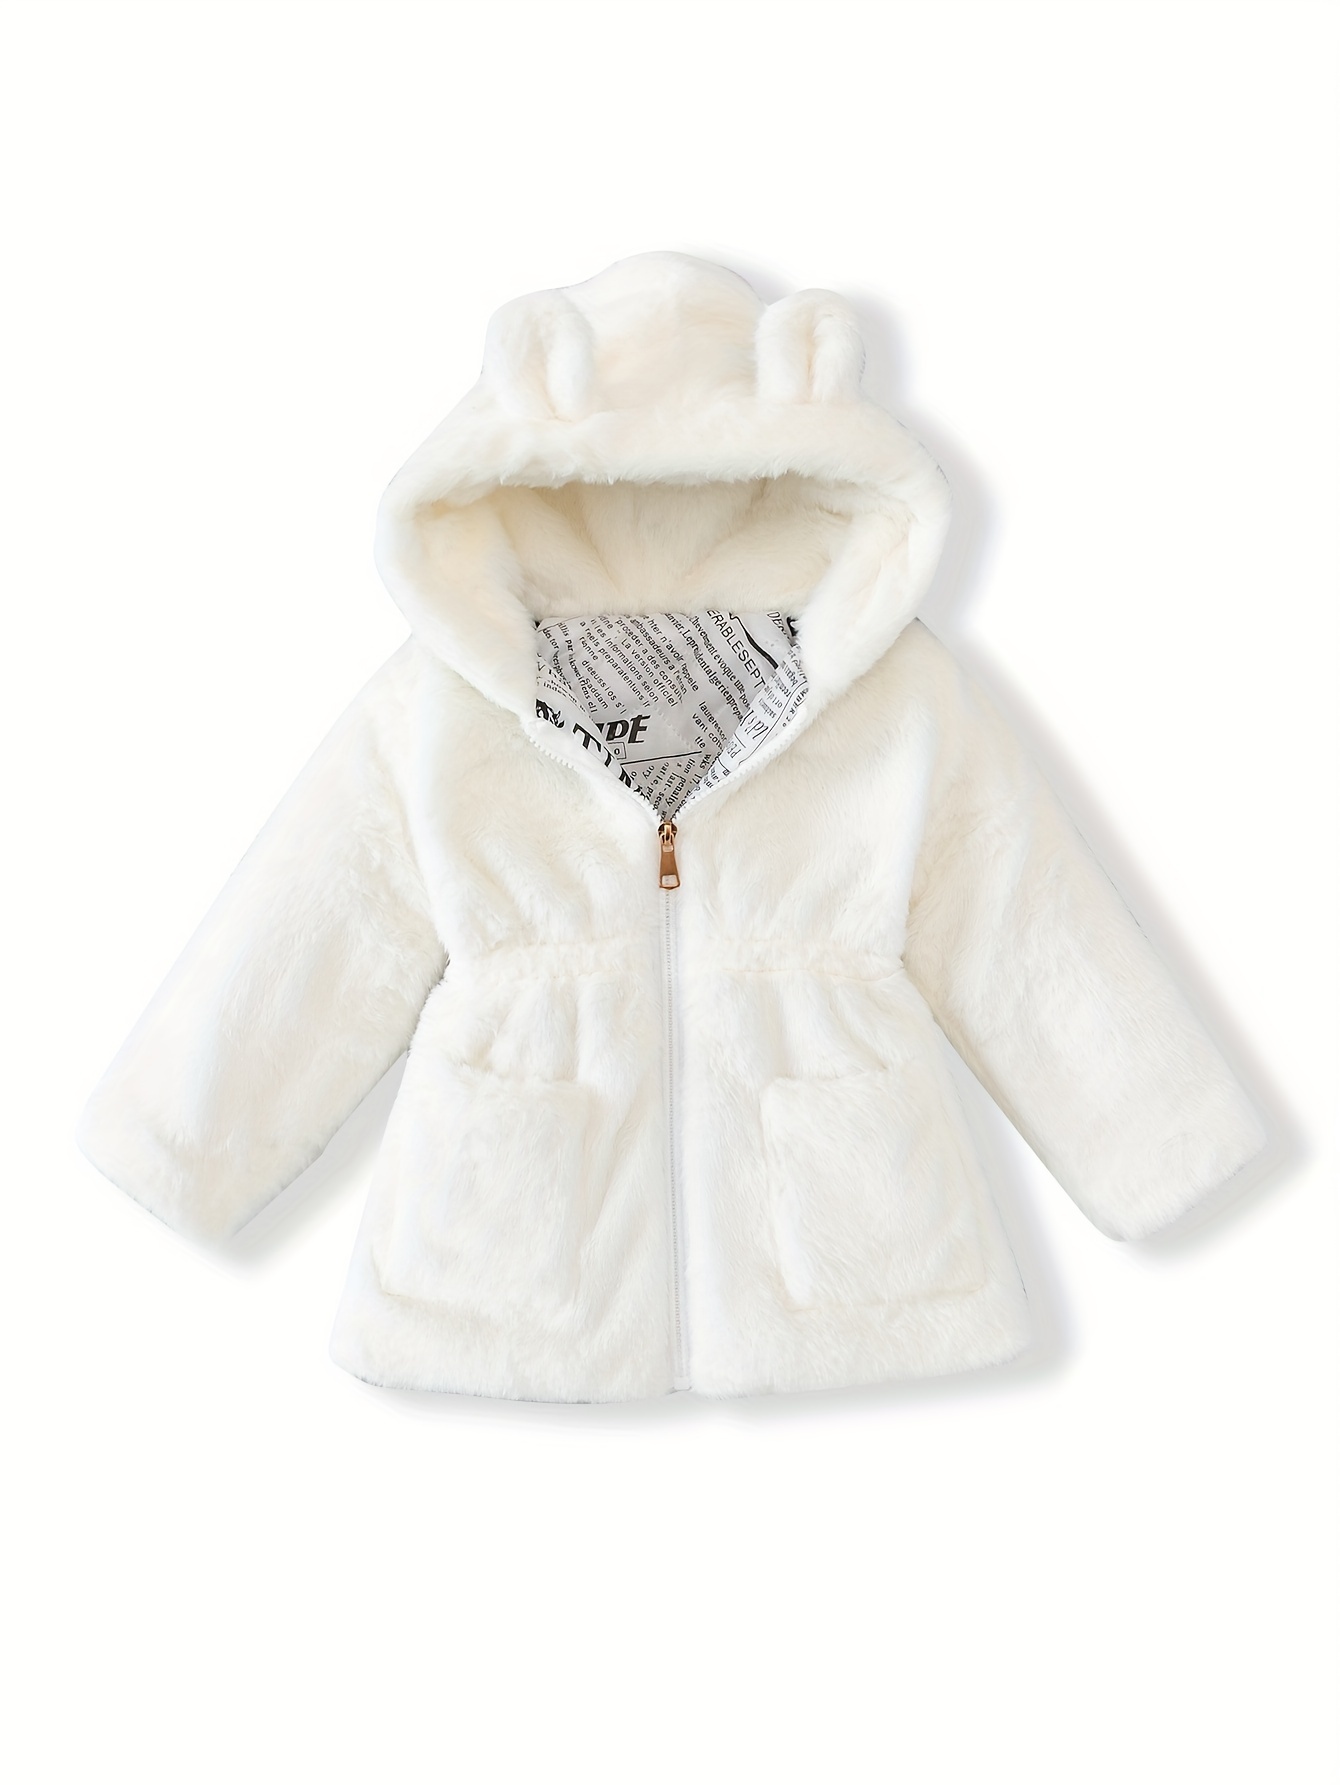 CO, Jackets & Coats, Co Rabbit Fur Vest